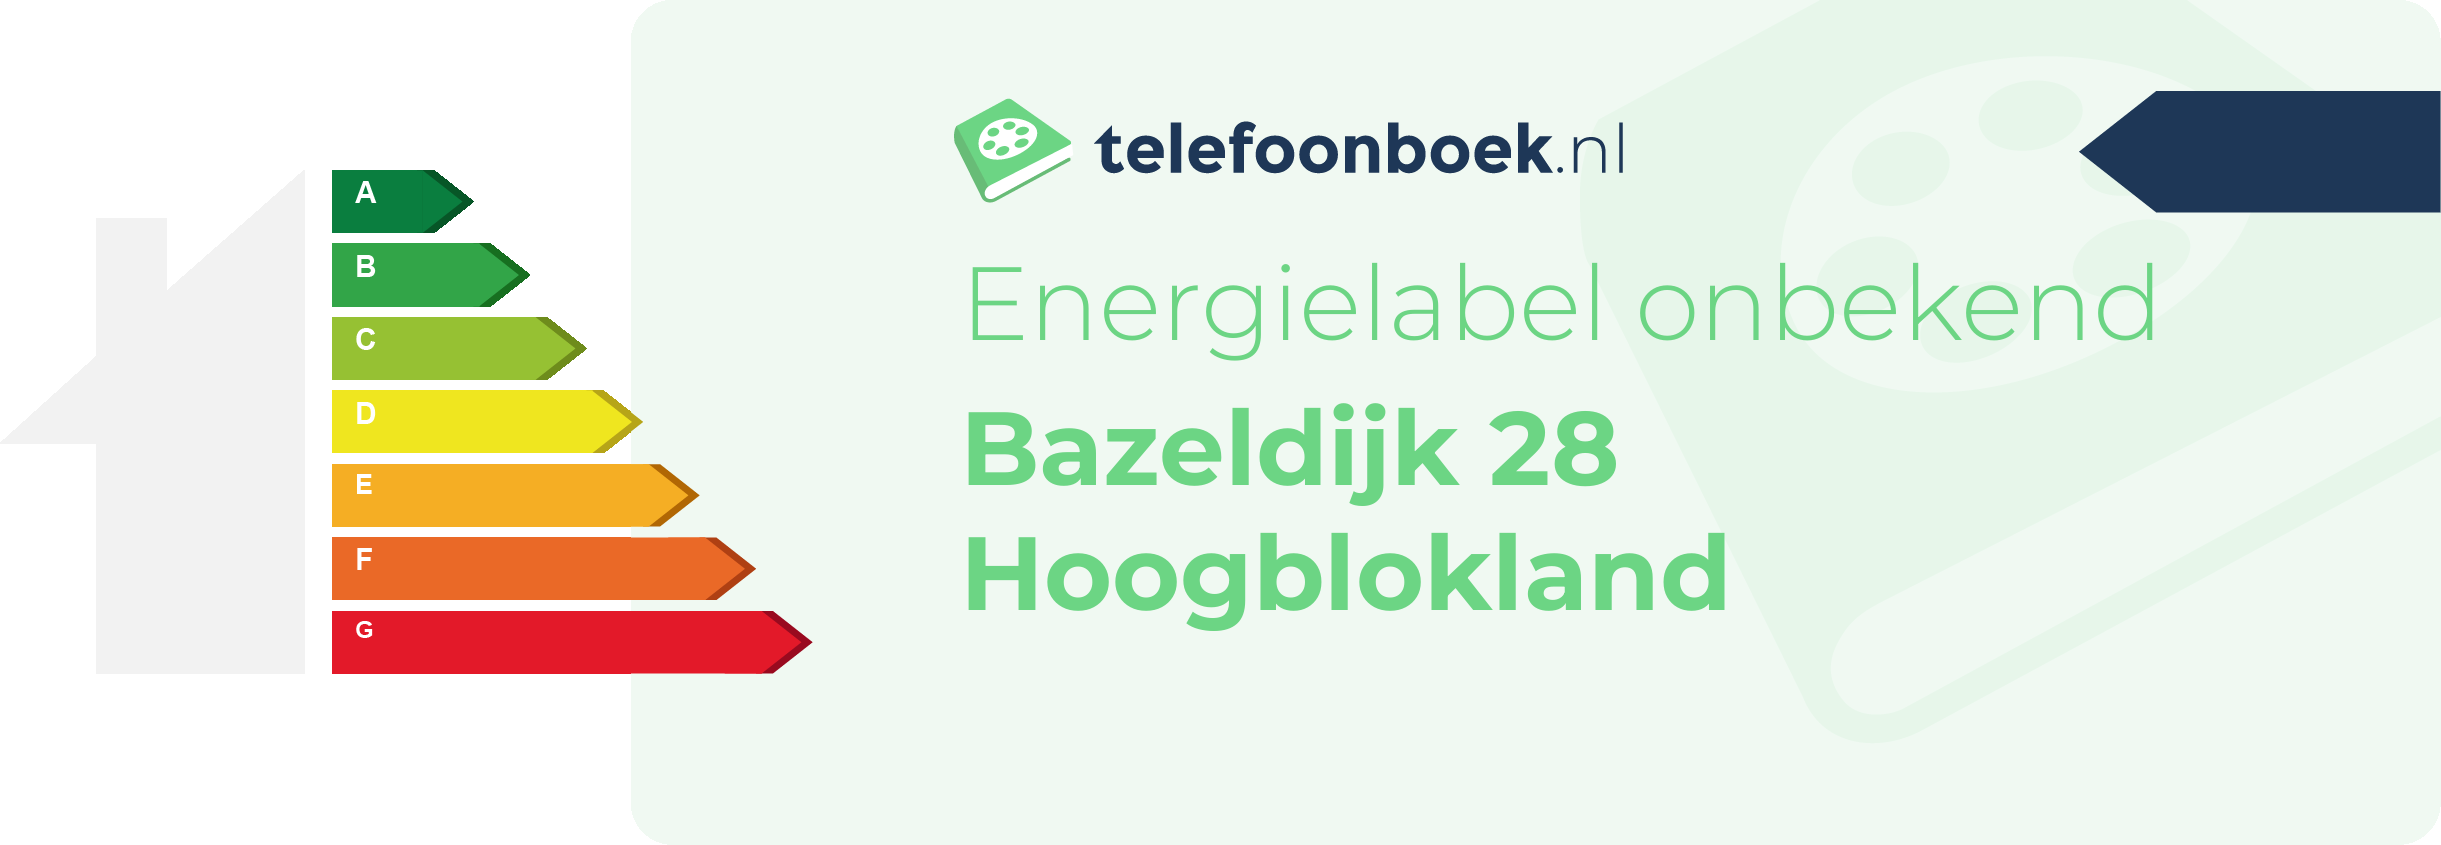 Energielabel Bazeldijk 28 Hoogblokland